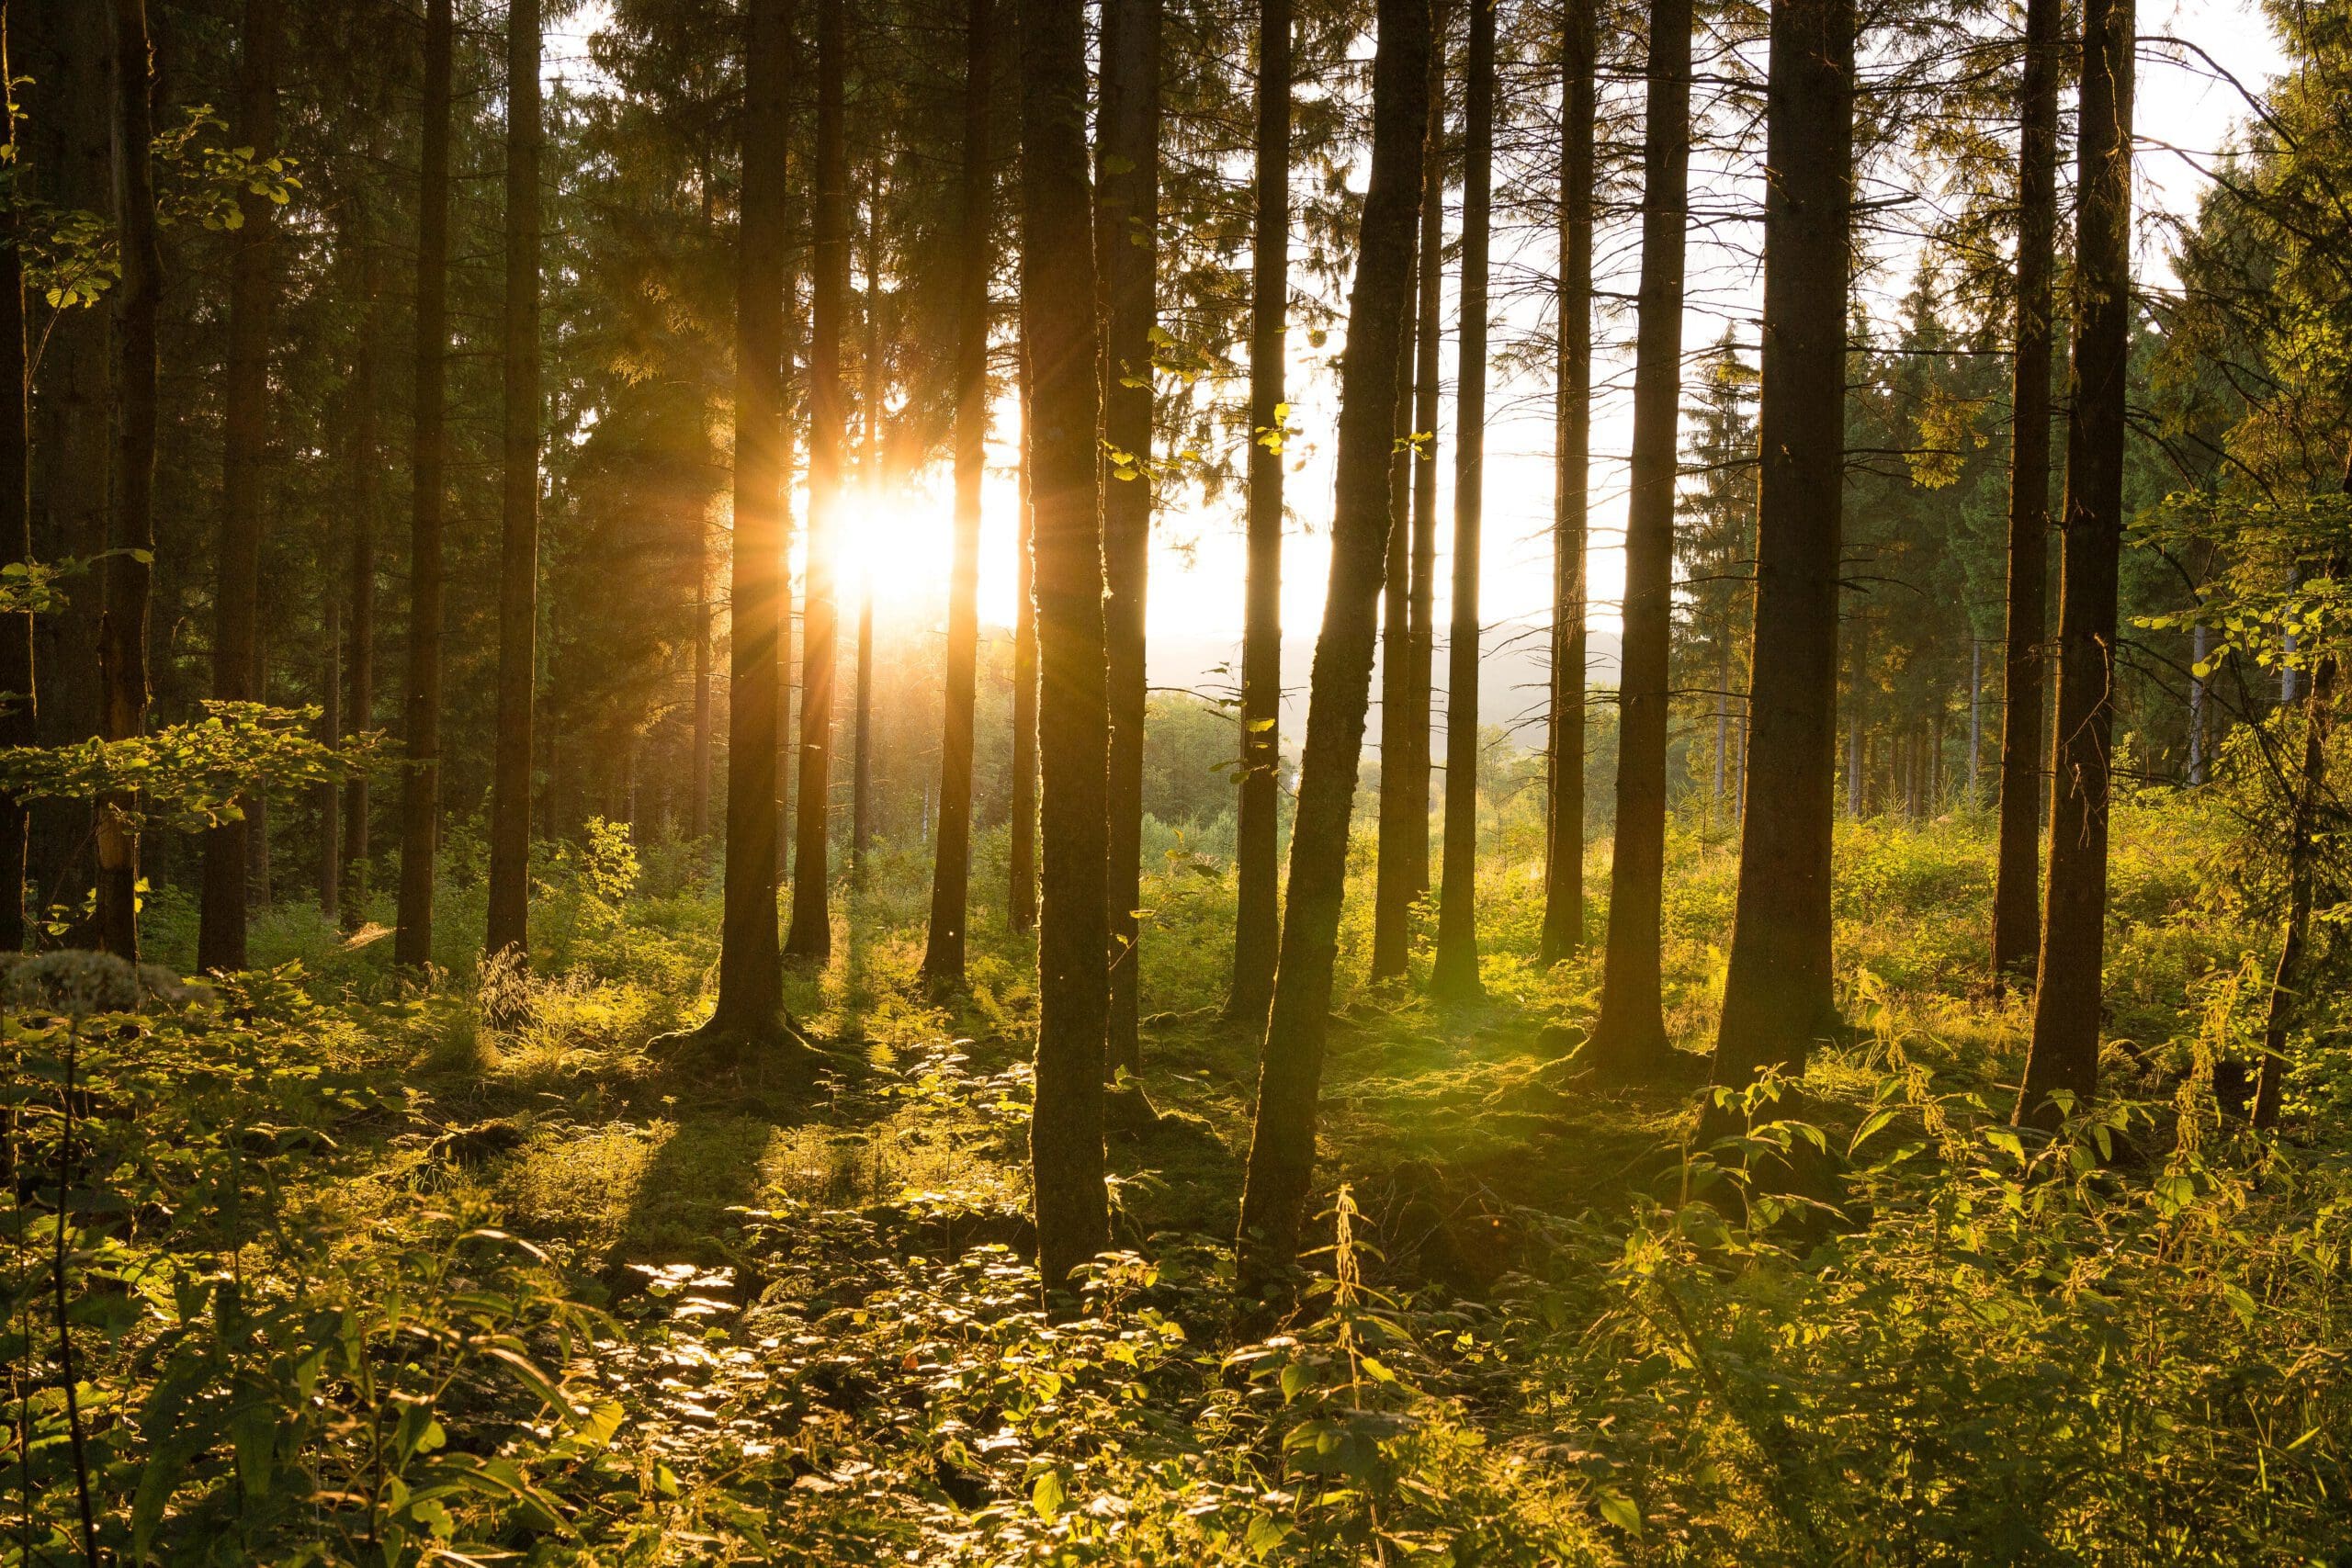 Sonnenlicht im Fichtenwald, ein seltener werdendes Bild. Ein Projekt im Naturpark Sauerland Rothaargebirge will mit alten, widerstandsfähigen Baumarten an der Waldzukunft arbeiten - Foto NPSR/Kerstin Berens